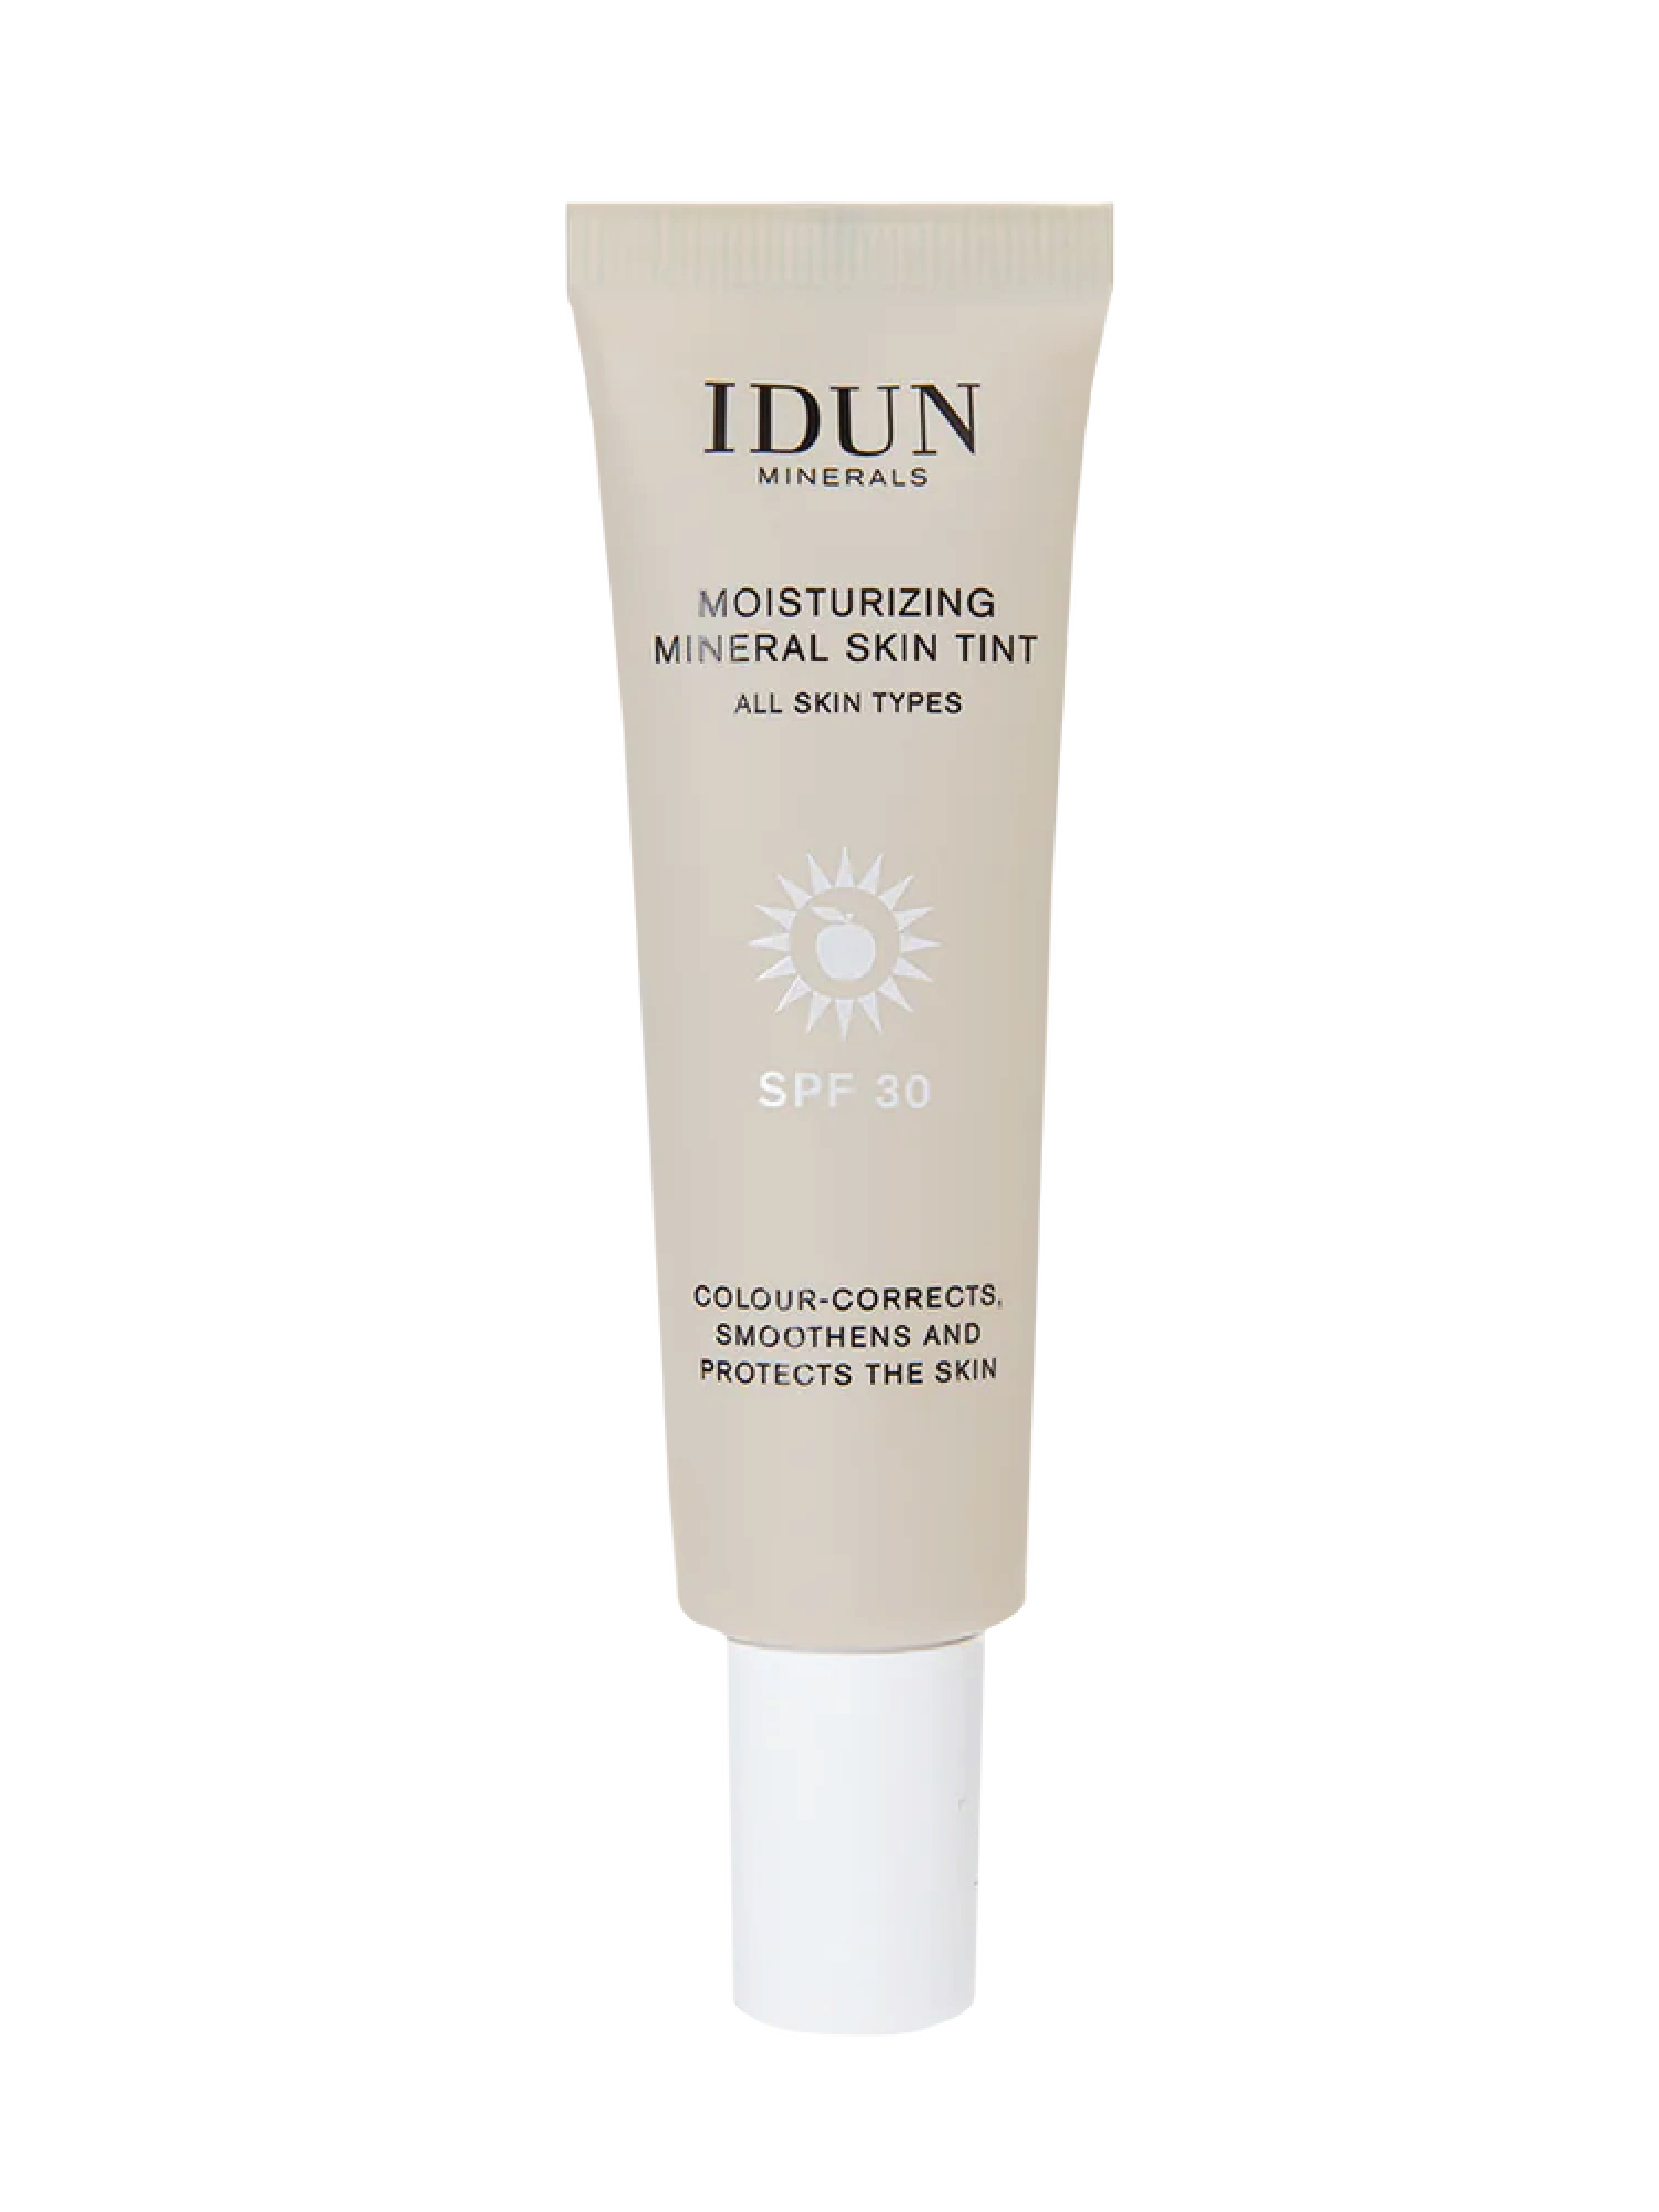 IDUN Minerals Moisturizing Mineral Skin Tint SPF 30, Tan/Deep, 27 ml